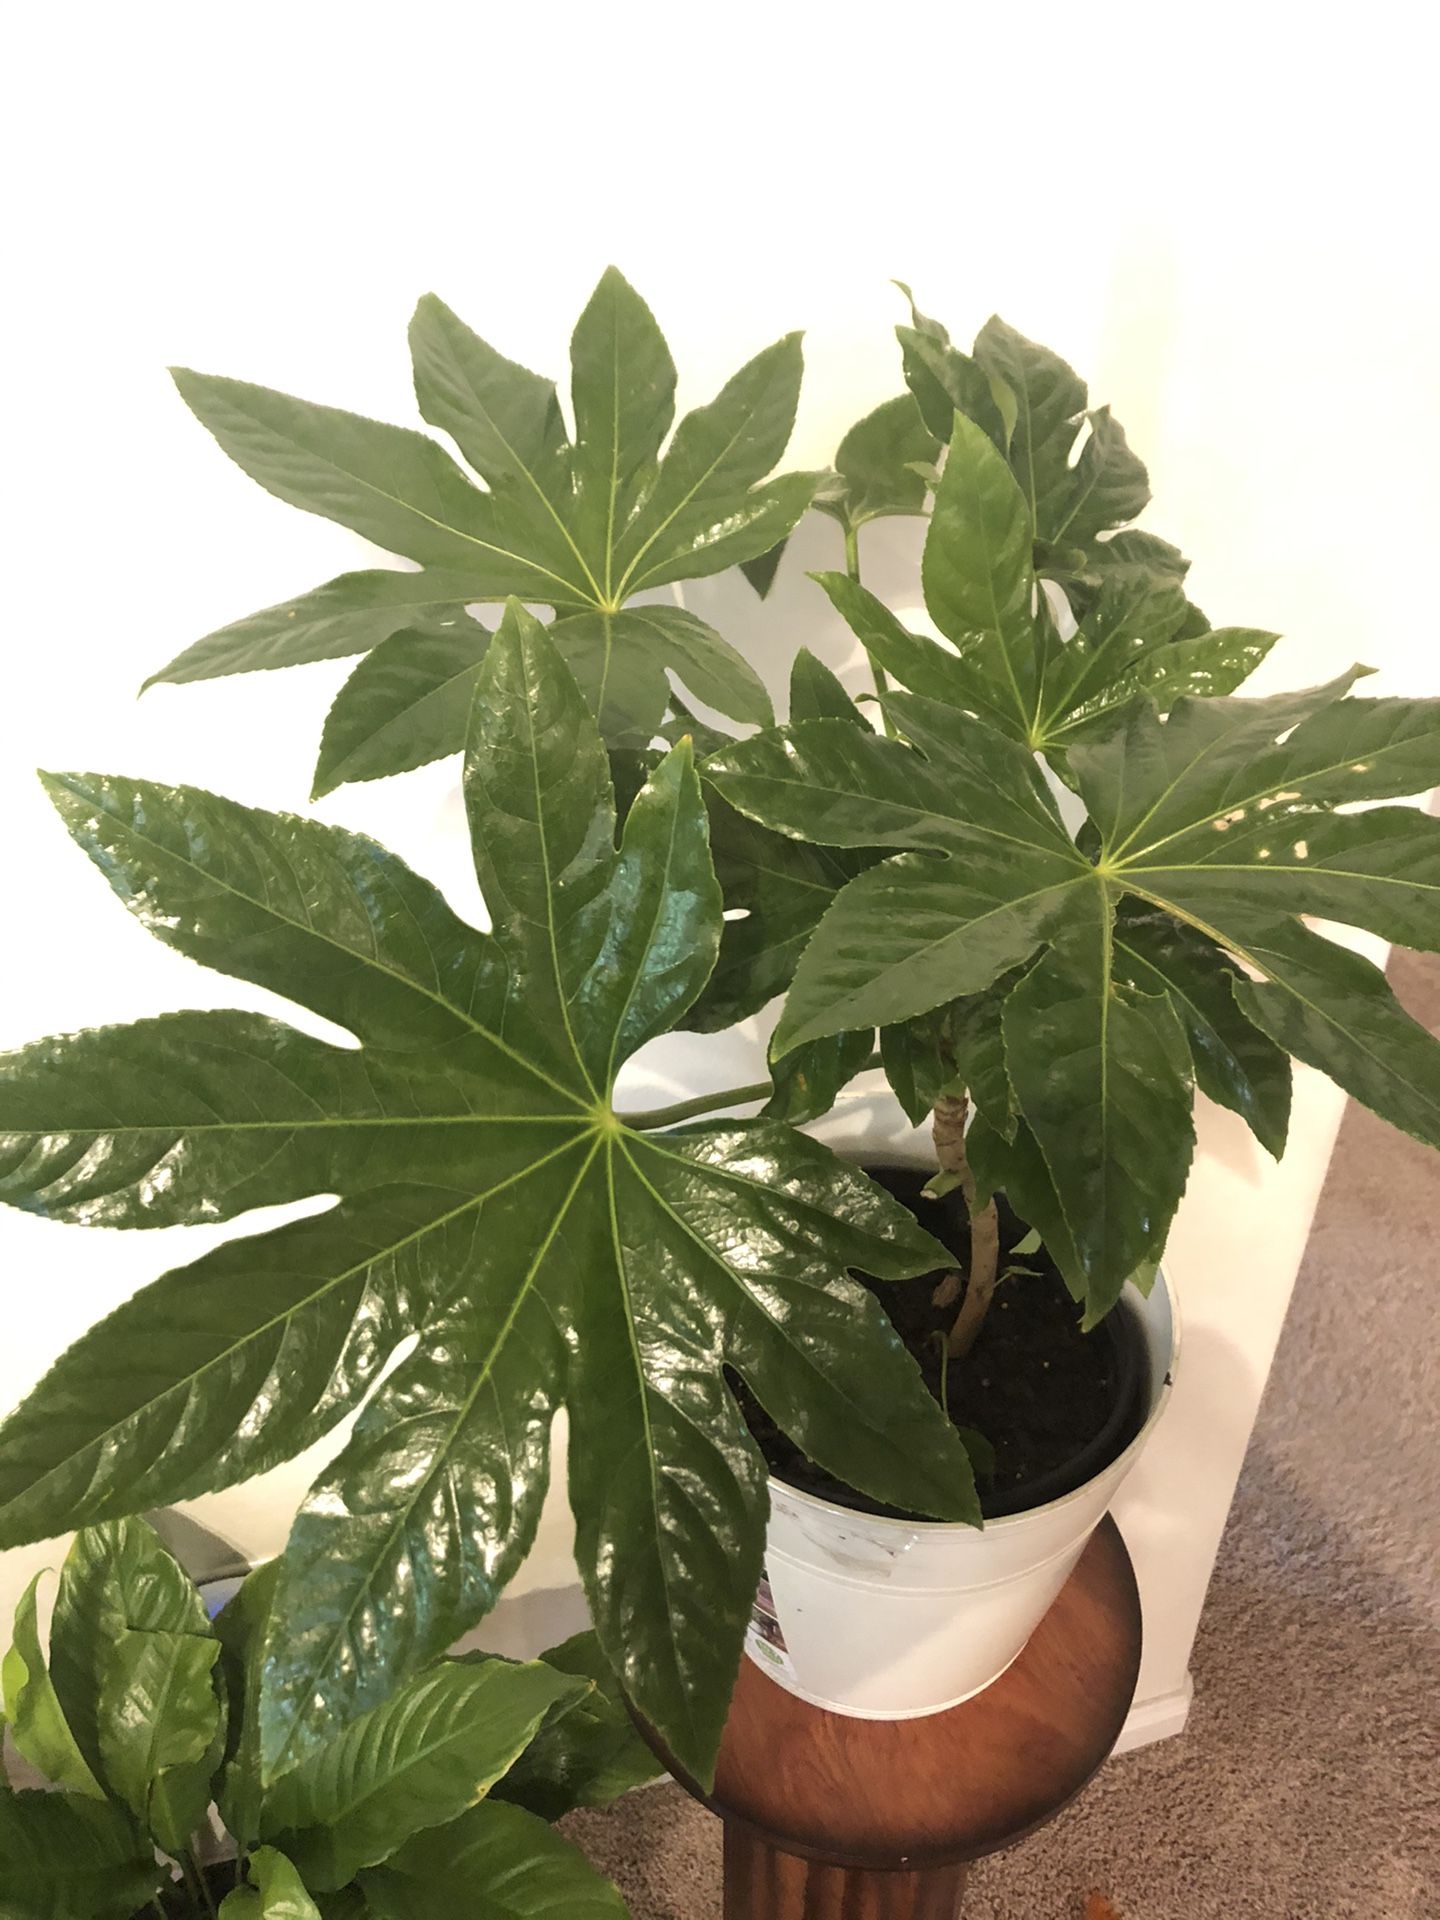 fatsis japonica/Japanese Aralia/spiderweb indoor live plant